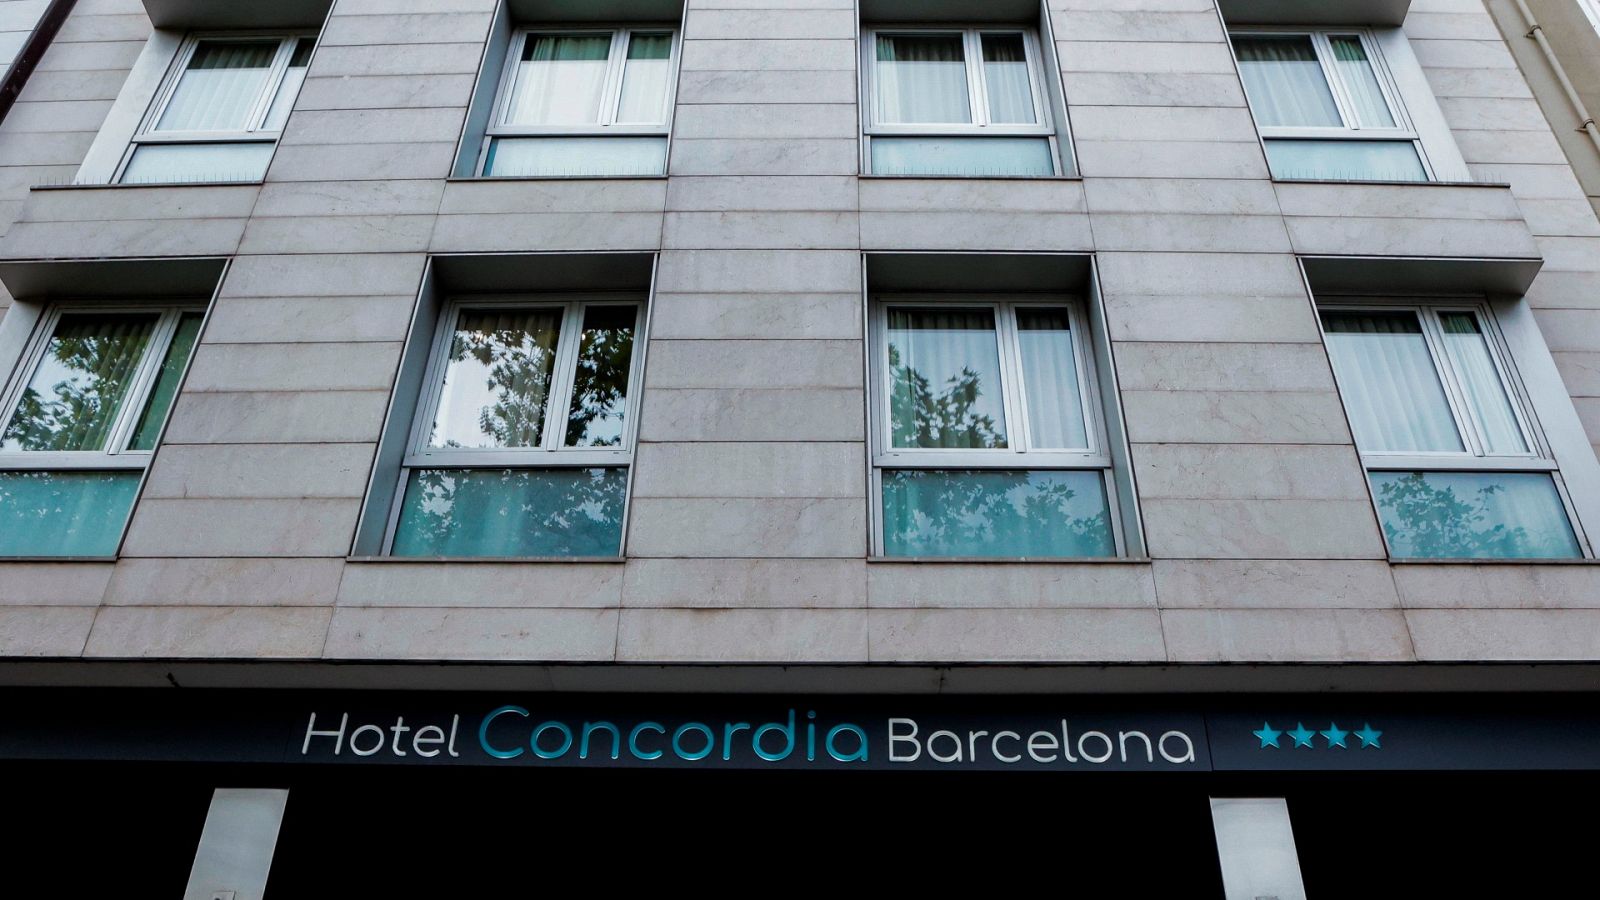 Buscan al padre de un niño hallado muerto en un hotel de Barcelona